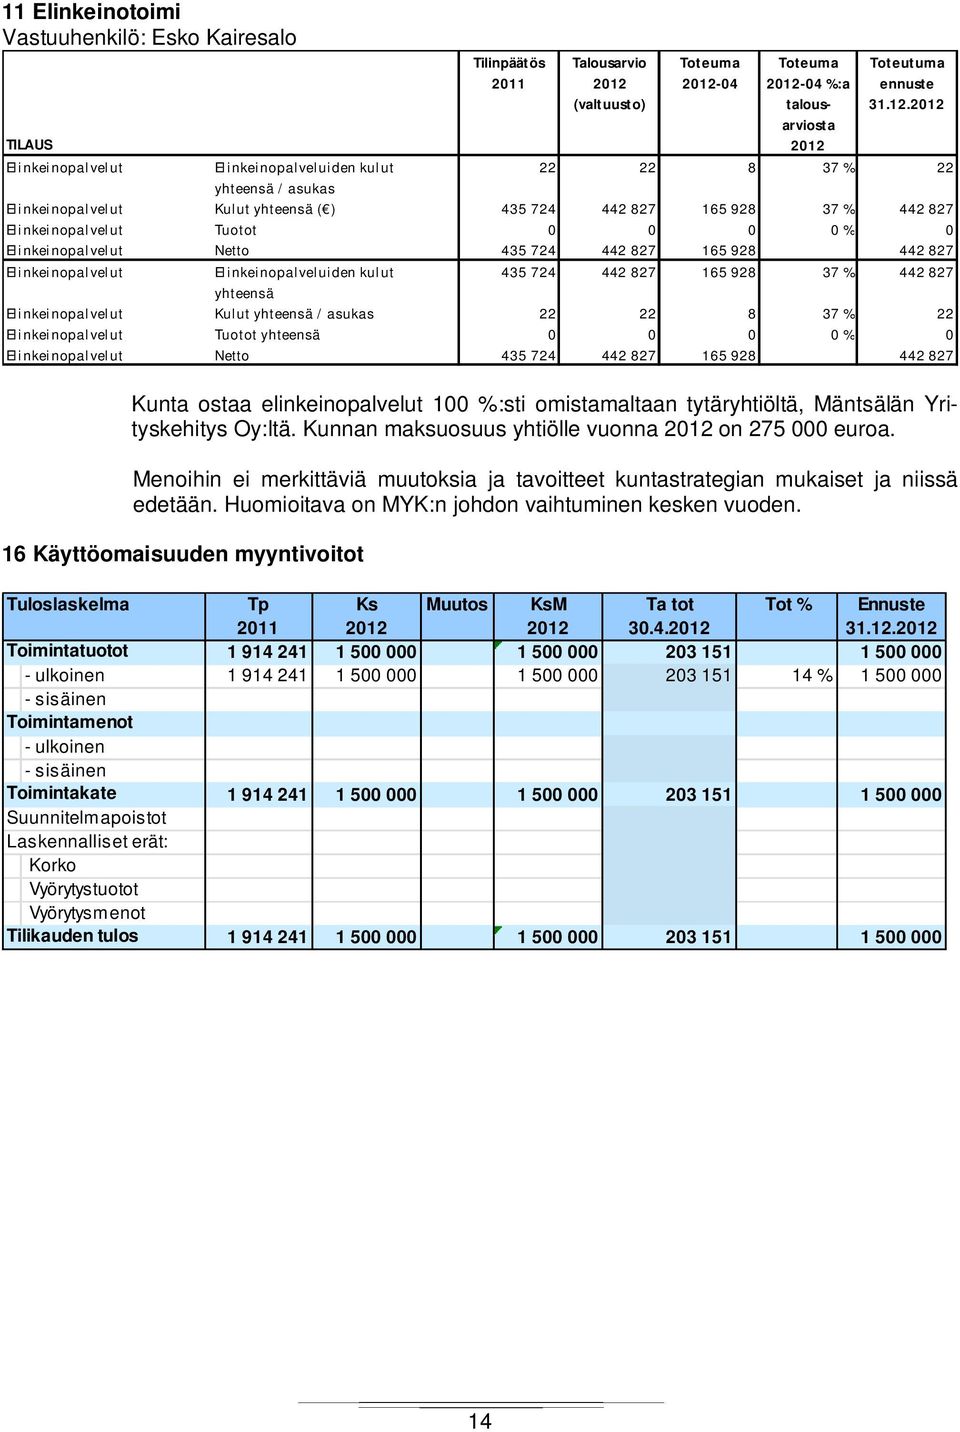 16 Käyttöomaisuuden myyntivoitot -04-04 %:a talousarviosta Toteutuma ennuste 31.12.